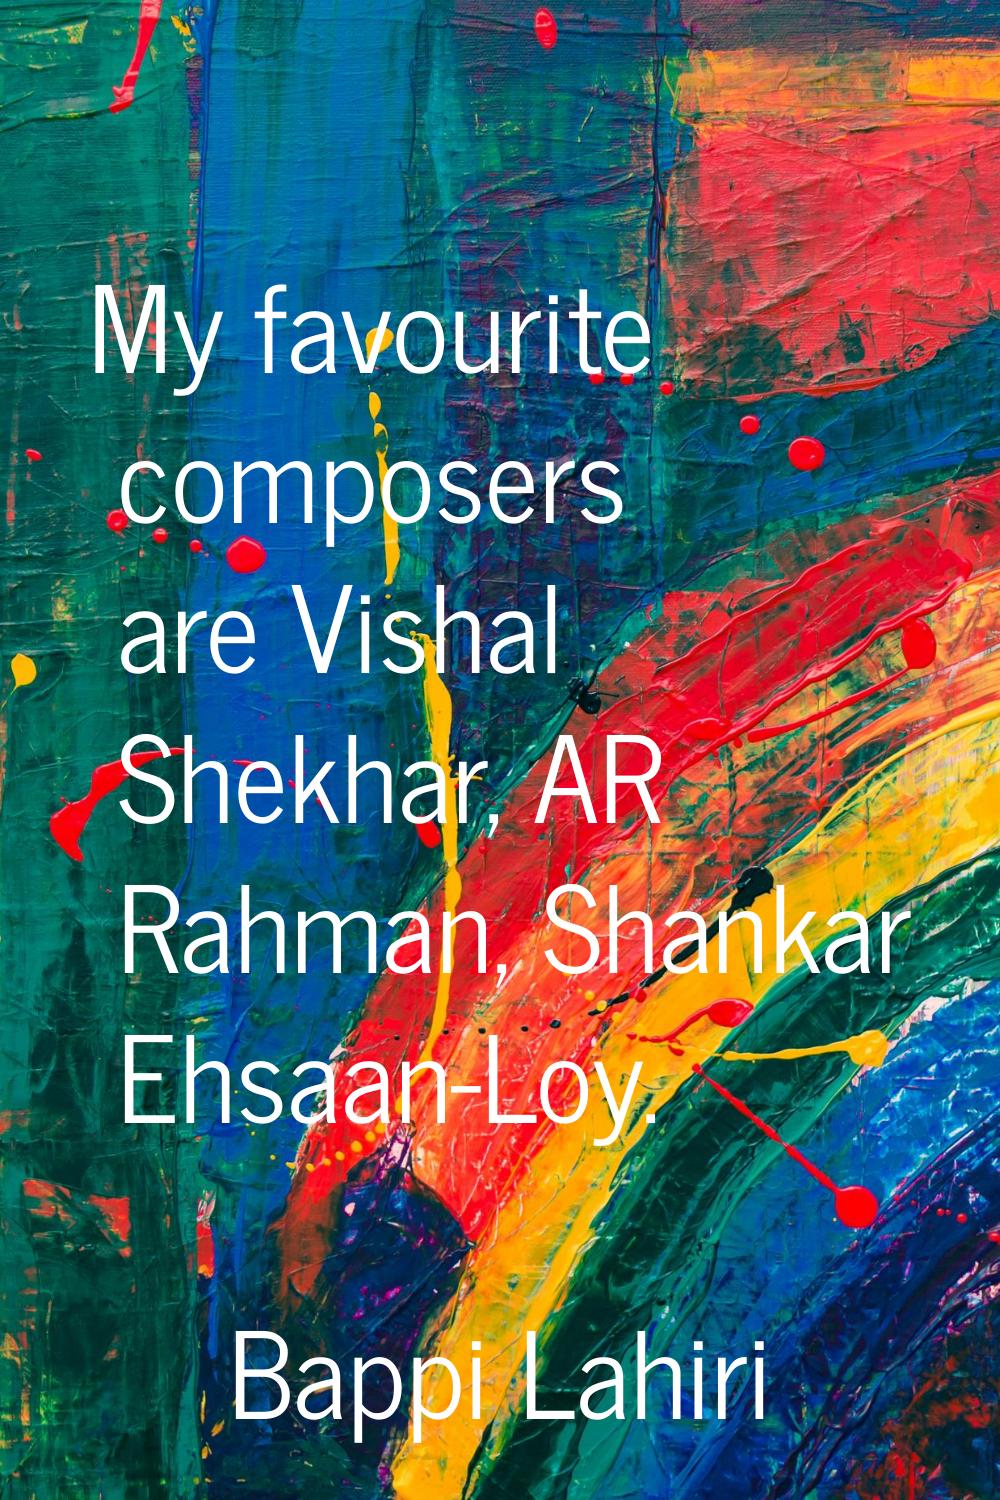 My favourite composers are Vishal Shekhar, AR Rahman, Shankar Ehsaan-Loy.